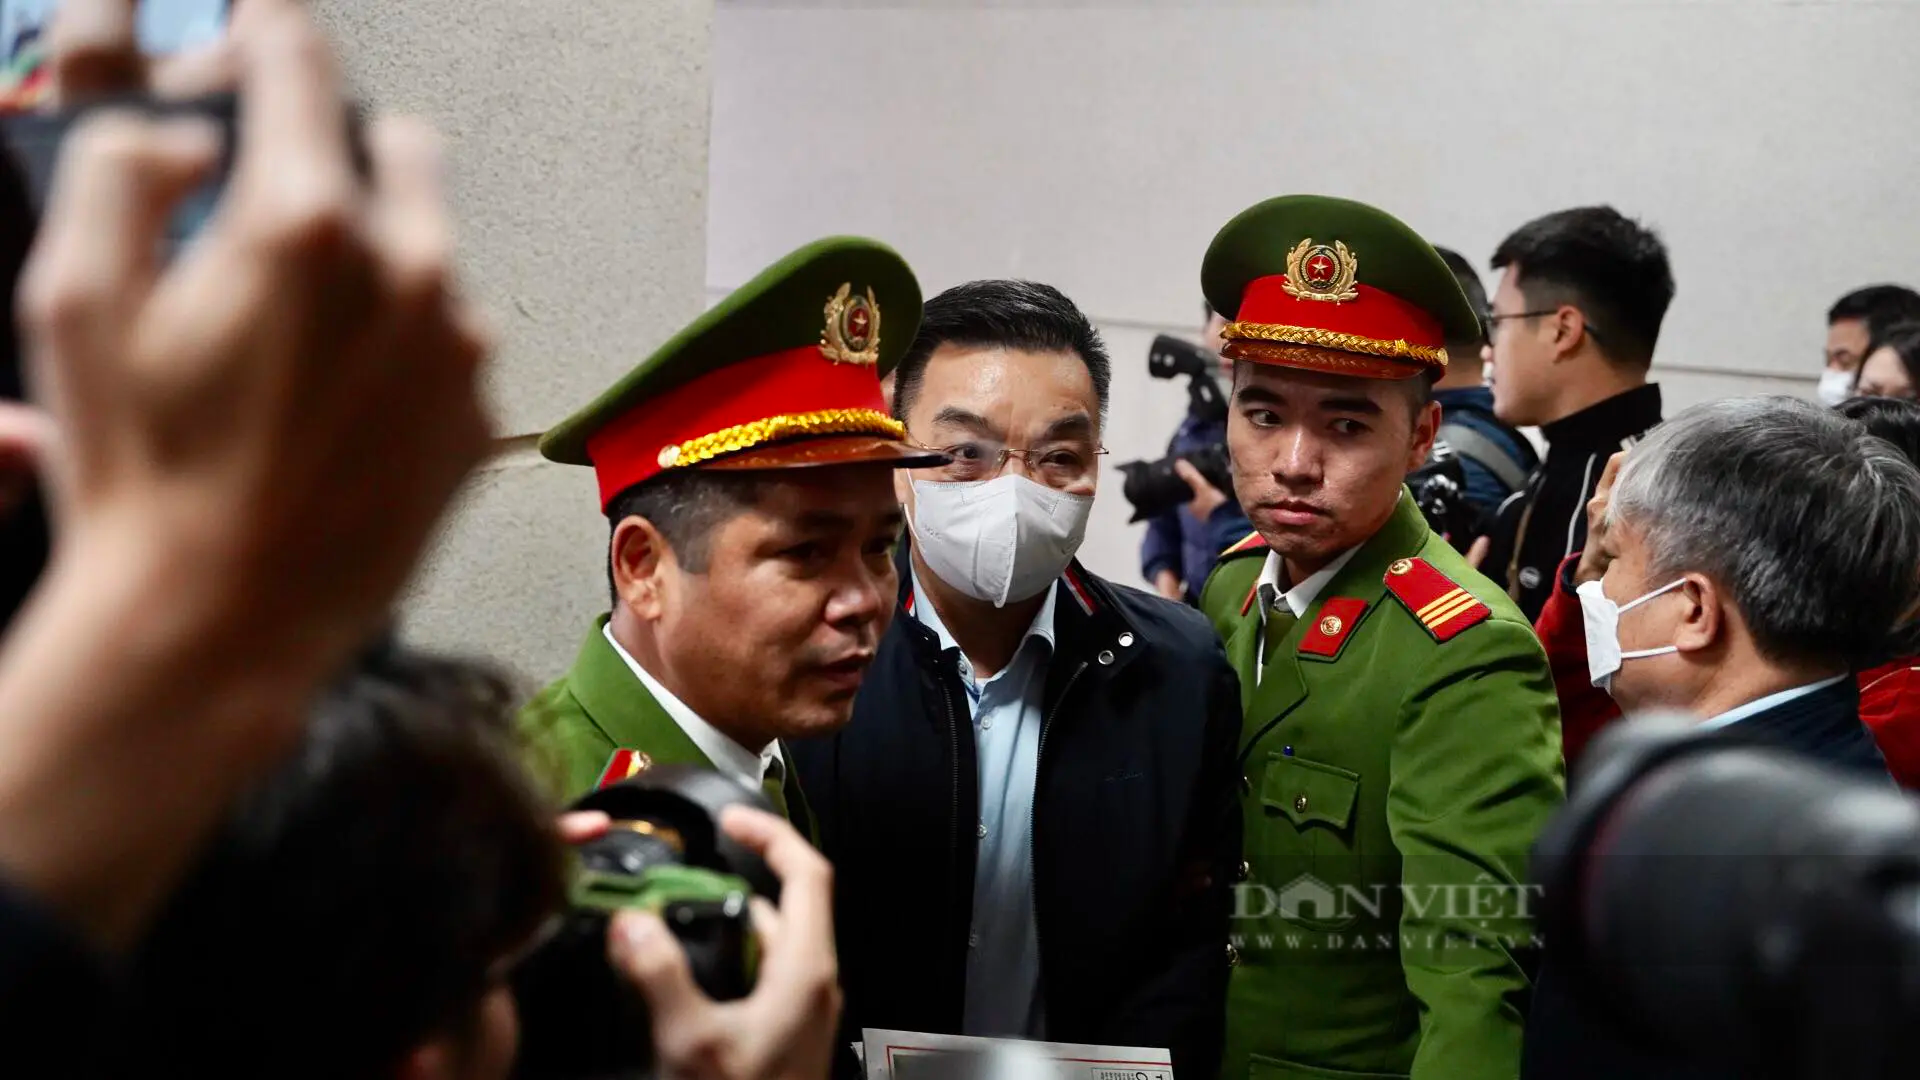 Hình ảnh đầu tiên dẫn giải cựu Bộ trưởng Chu Ngọc Anh, Nguyễn Thanh Long và các bị cáo đến toà vụ Việt Á- Ảnh 2.